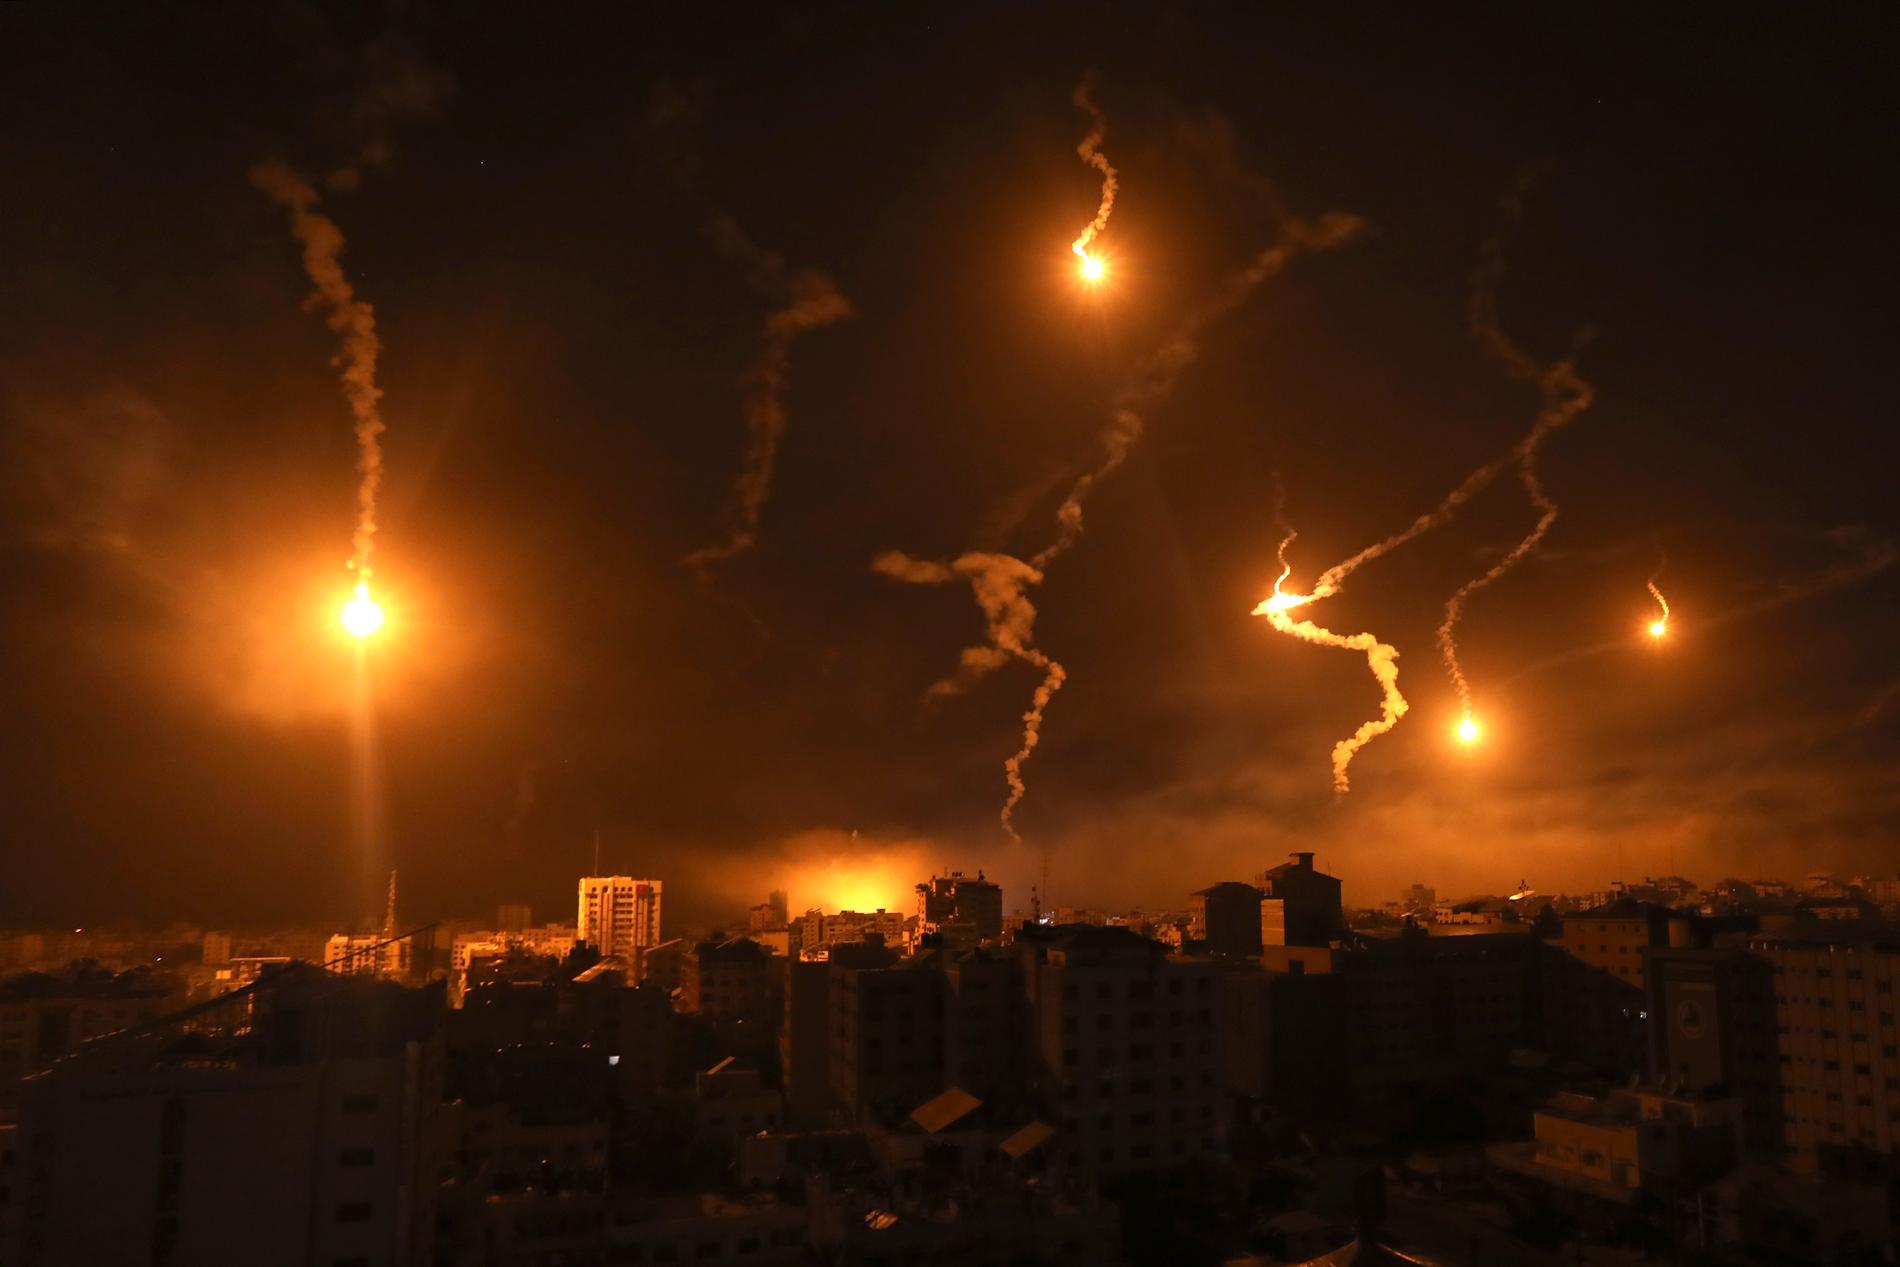 Lysraketer från israeliska styrkor lyser upp natthimlen i Gaza stad.